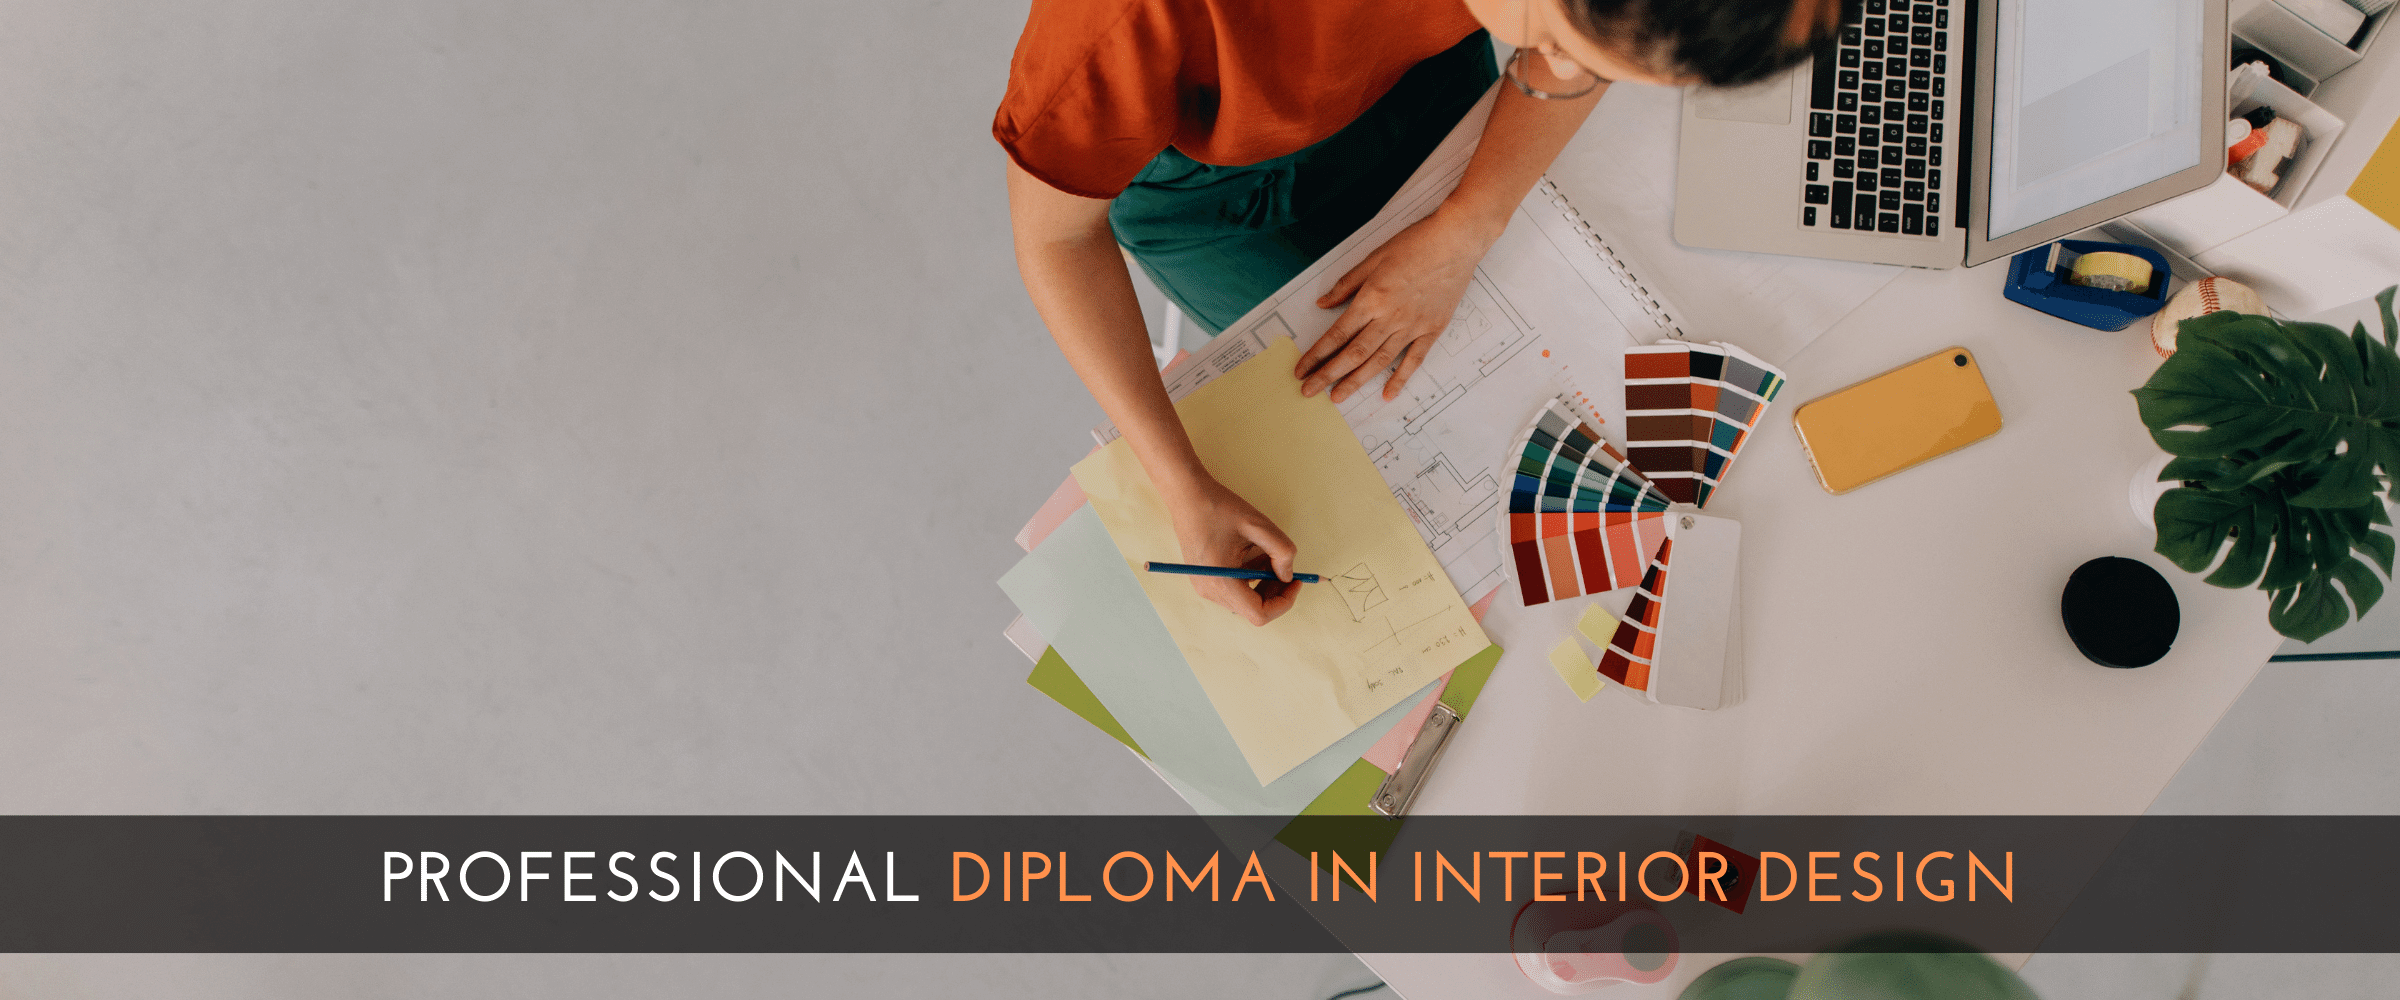 Professional Diploma in Interior Design LCA